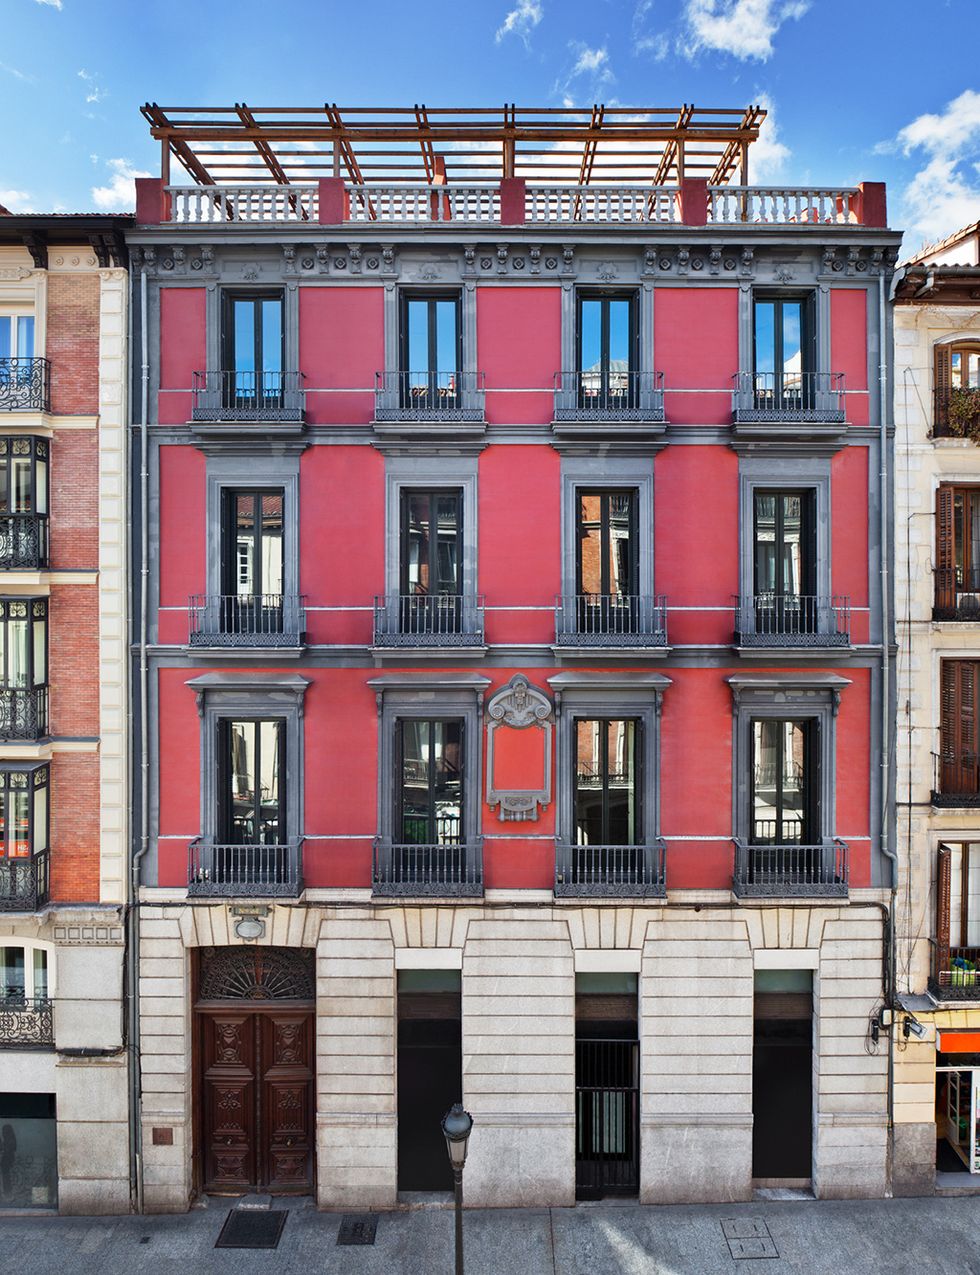 <p>Un precioso edificio histórico de 1857, sito en la calle Atocha, 34 de Madrid, será el escenario de la nueva edición de <a href="http://casadecor.es/madrid-2016/" target="_blank">CasaDecor</a> hasta el próximo 26 de junio. Más de 100 profesionales, entre decoradores, interioristas, arquitectos, diseñadores, paisajistas y artistas, presentarán más de 50 proyectos decorativos aprovechando la peculiar arquitectura de la casa palacio: seis plantas, paso de carruaje, una espectacular escalera principal e incluso techos de siete metros de alto. </p>